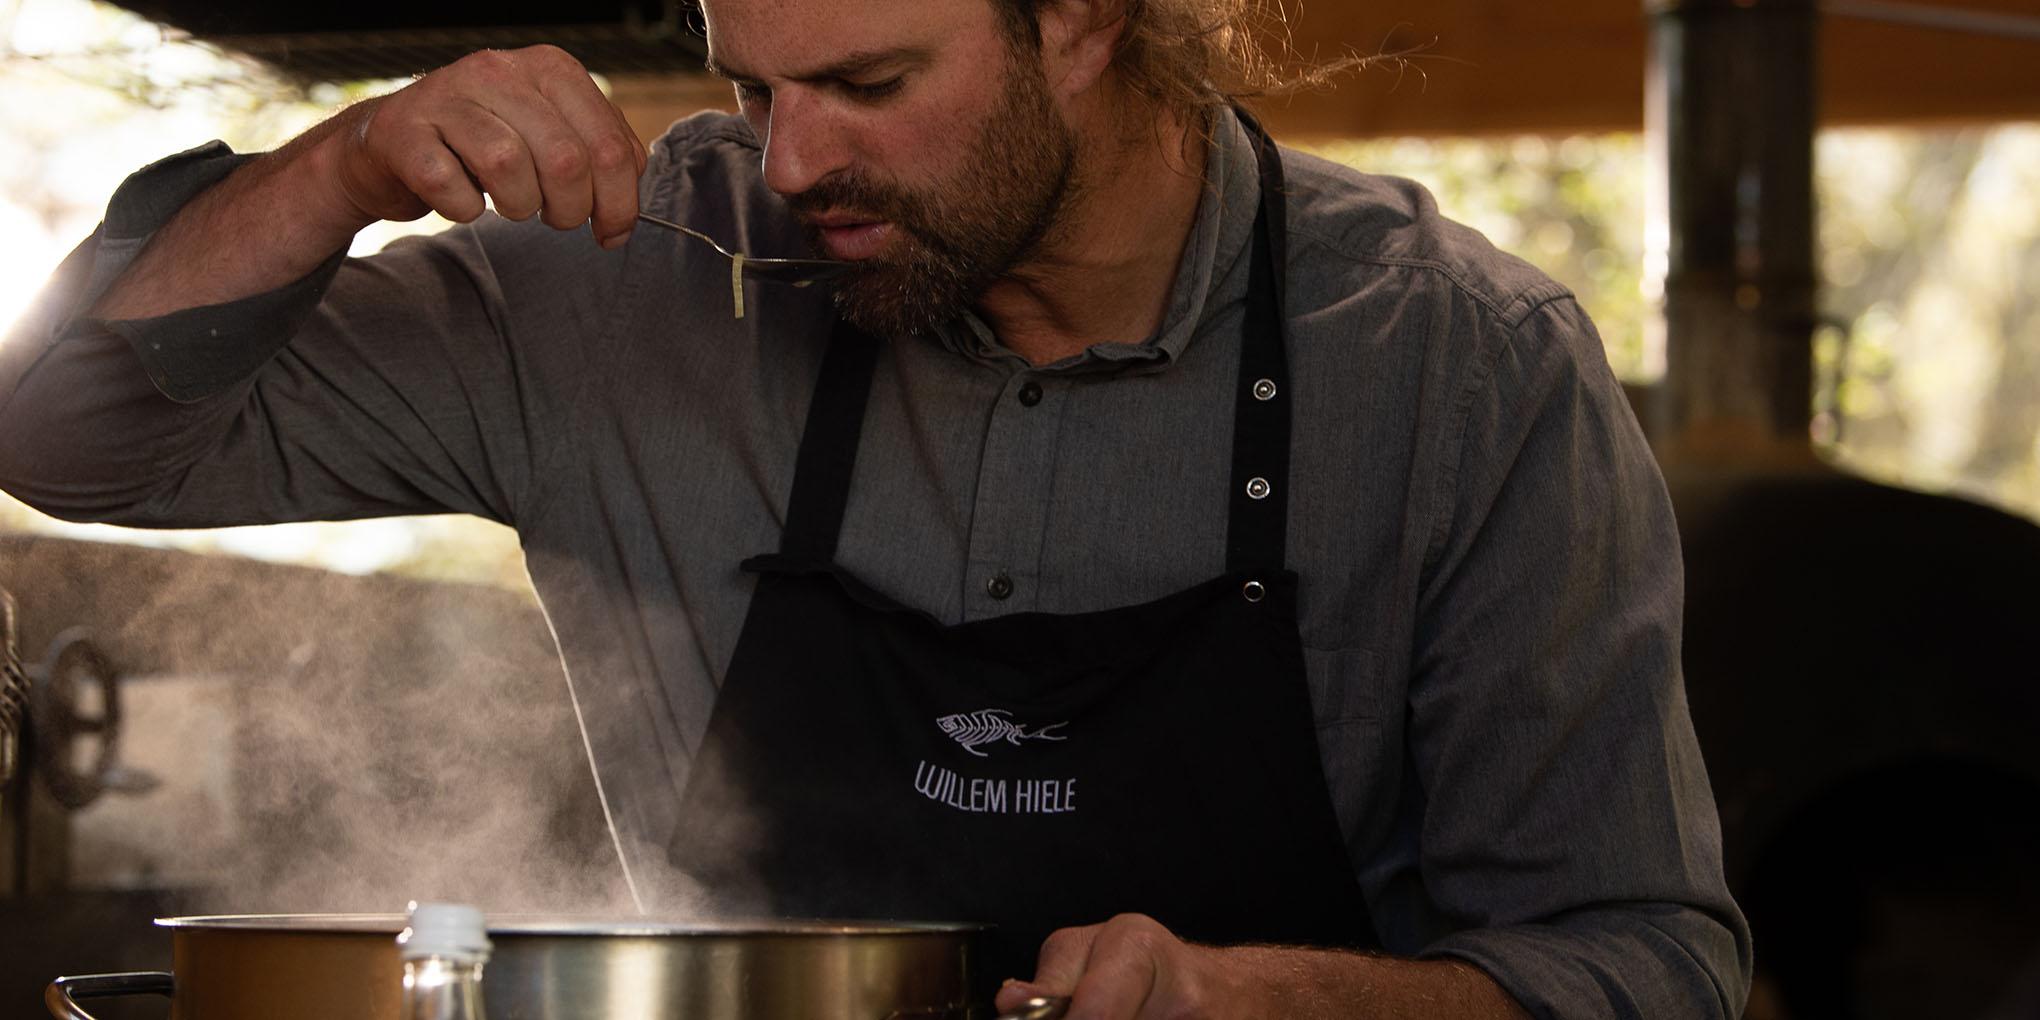 Le chef étoilé Willem Hiele goûte sa préparation de croquettes de crevettes locales.